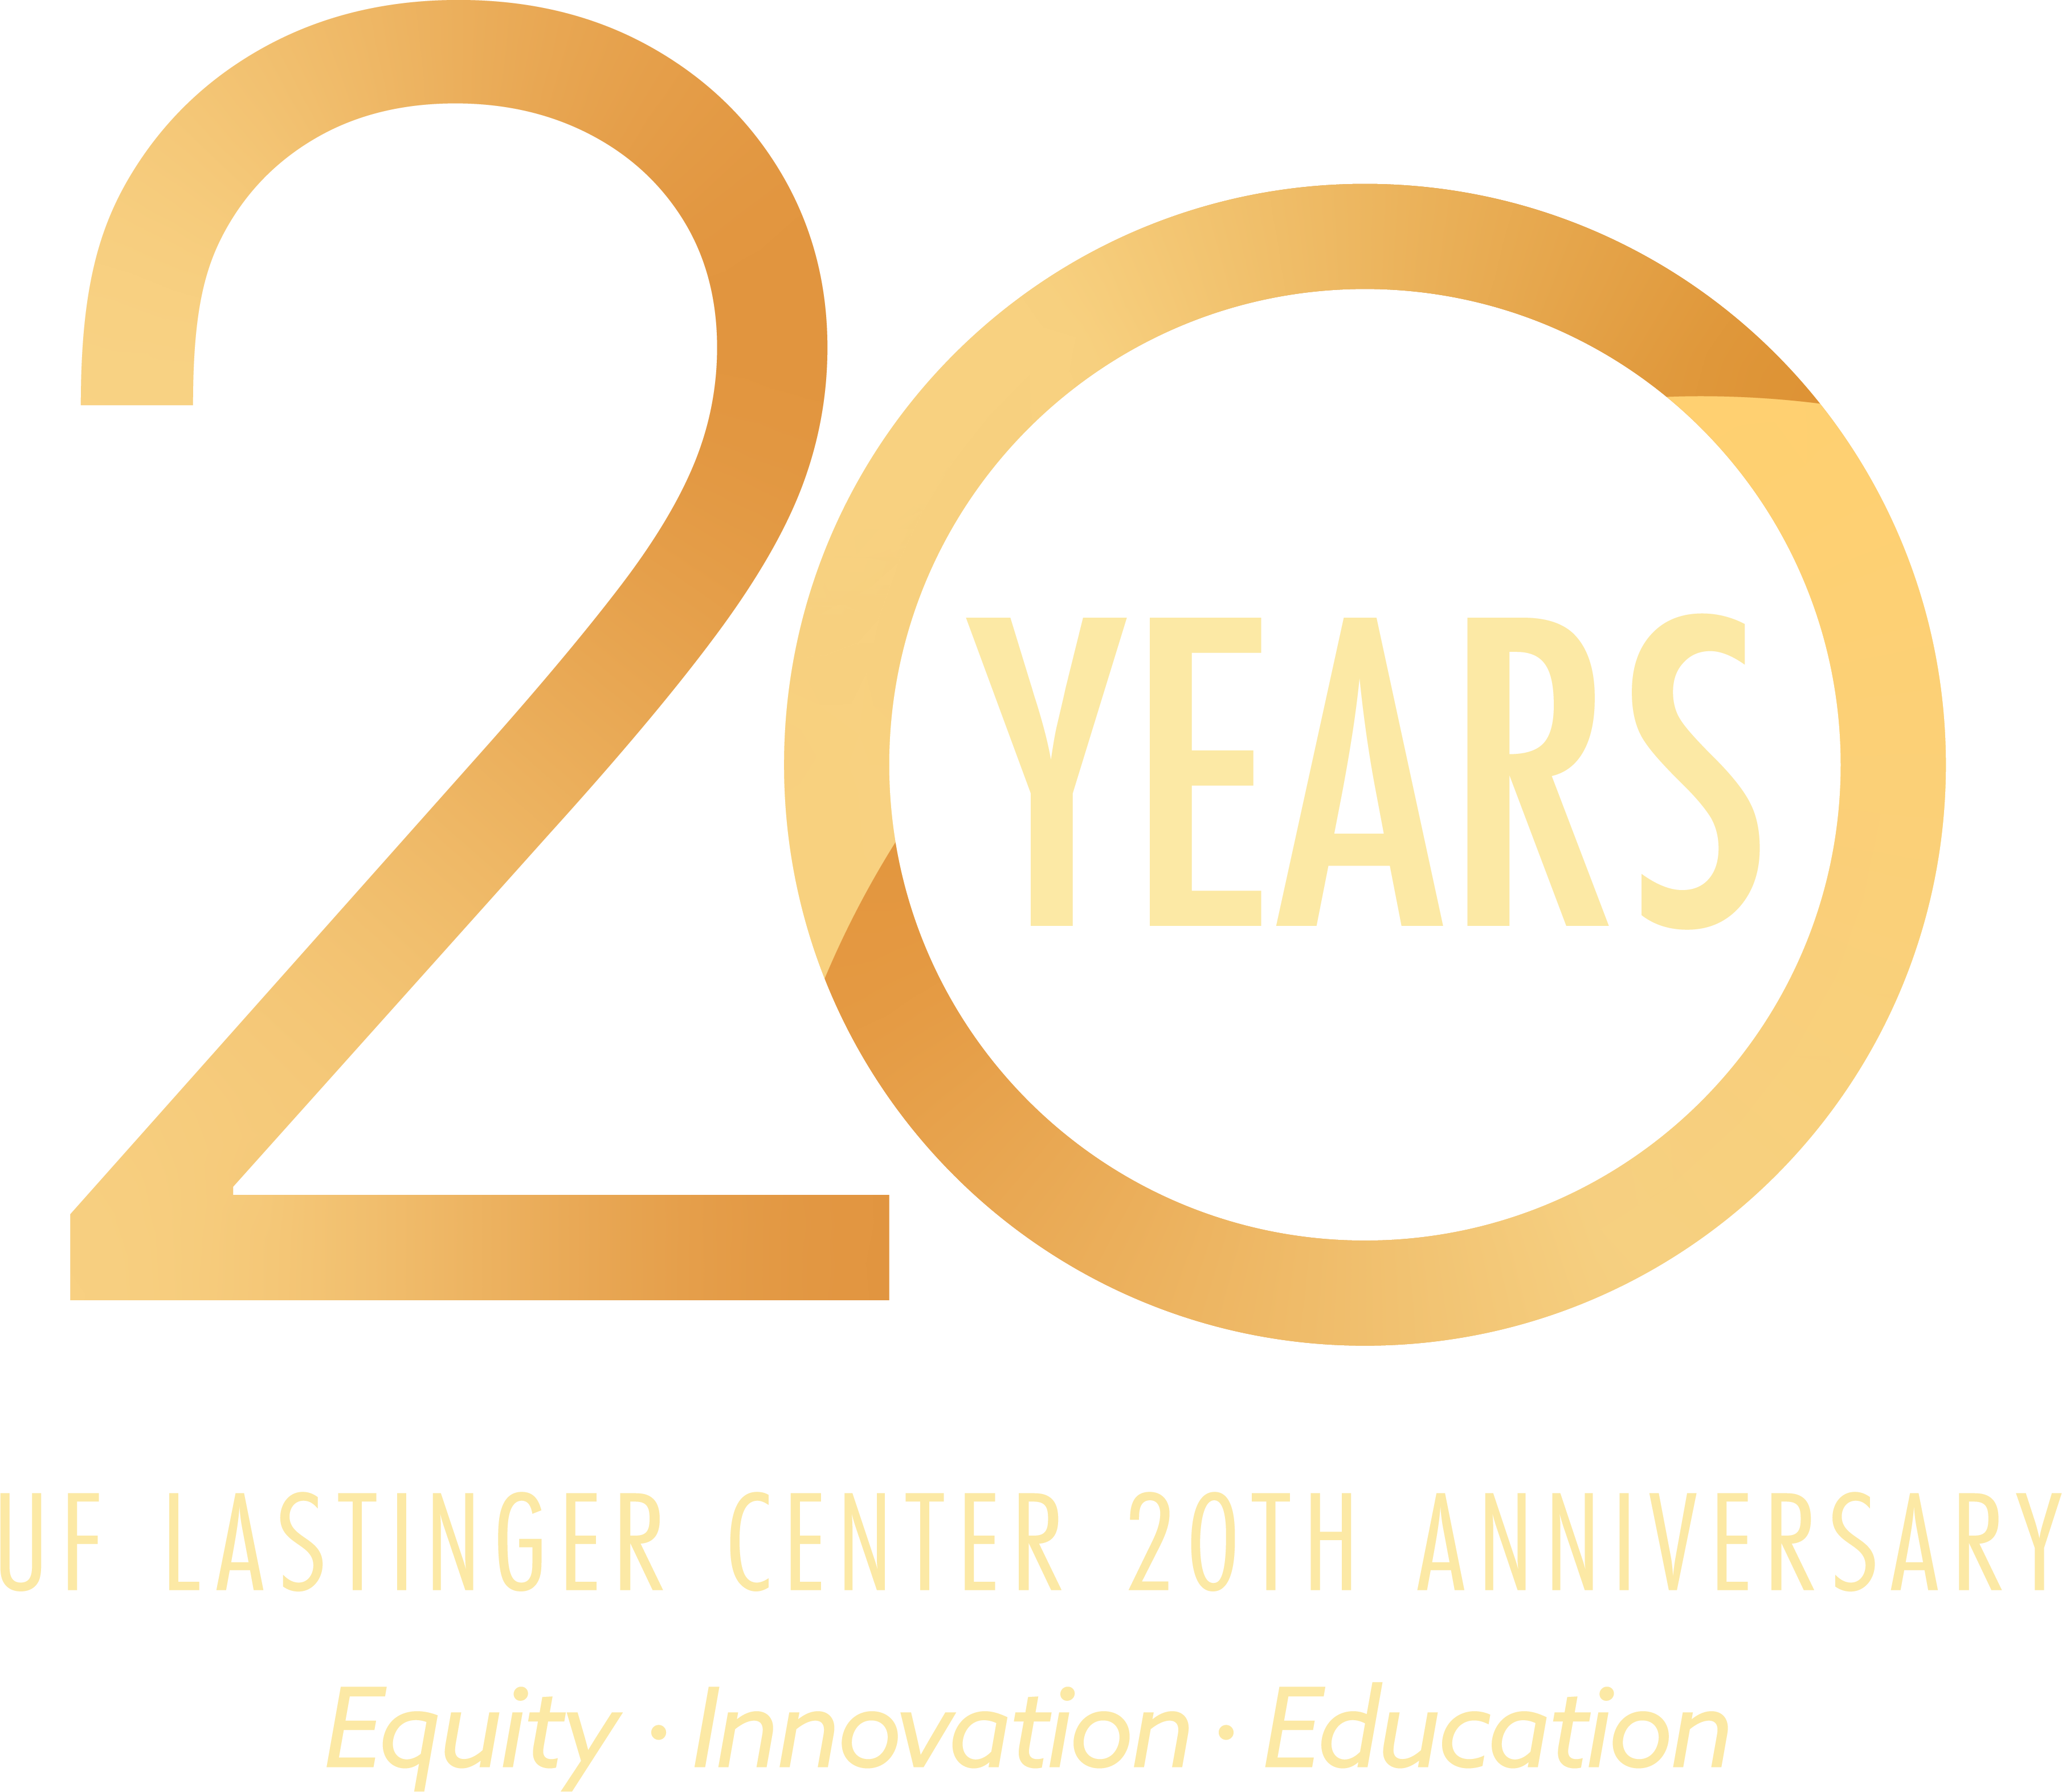 20 Years - UF Lastinger Center 20th Anniversary